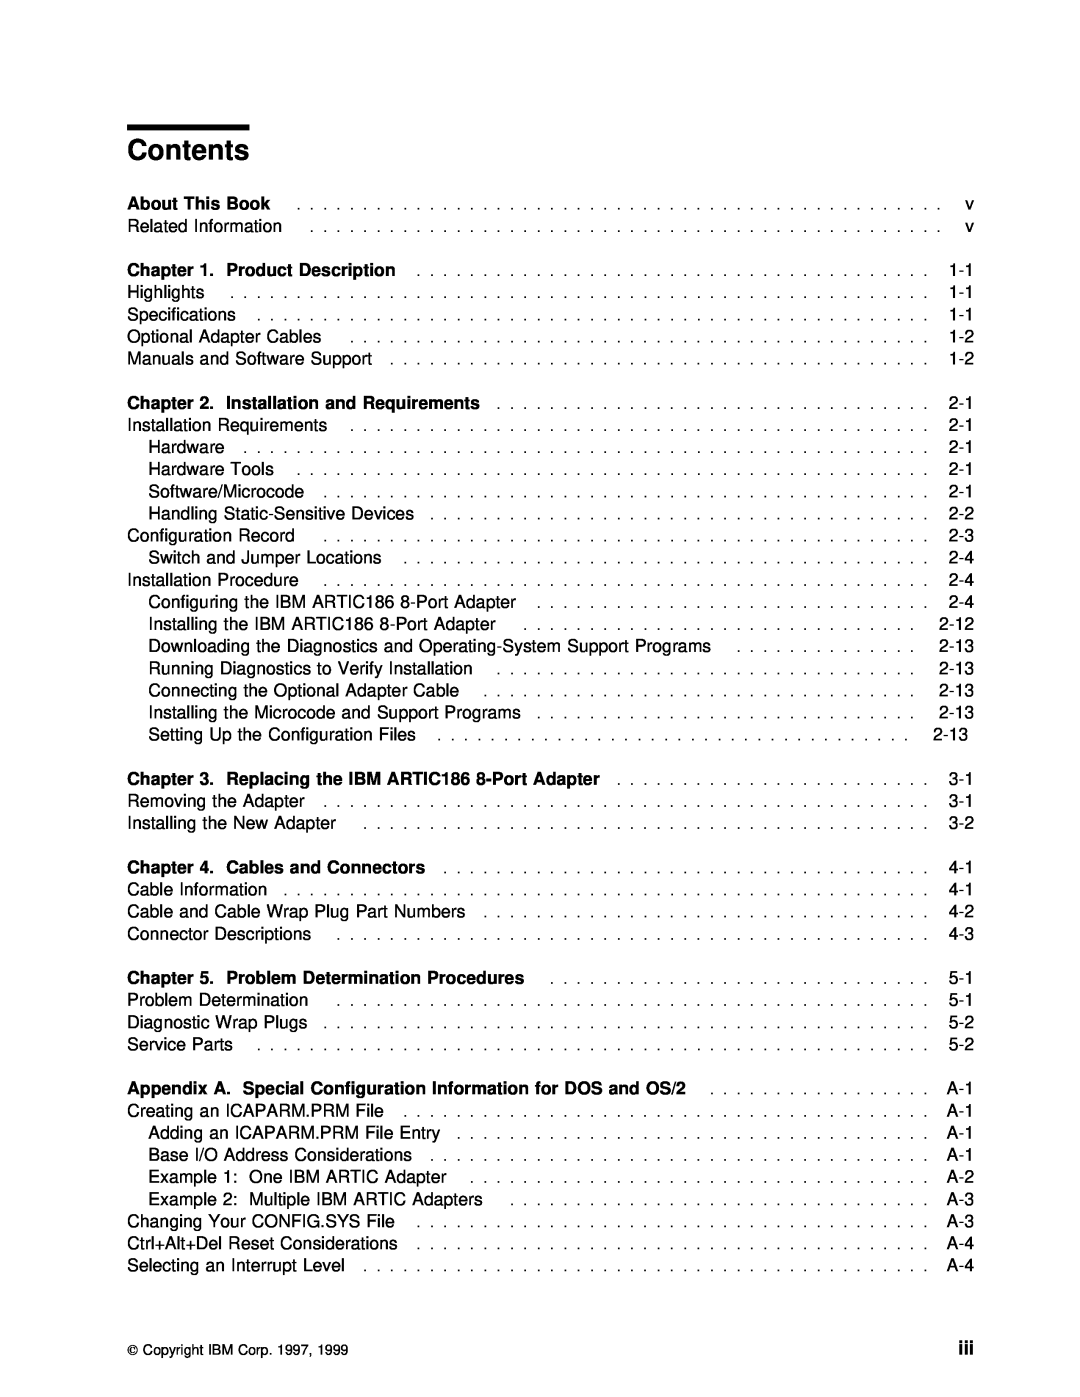 IBM ARTIC186 manual Contents, About, r 1. Produc, t Descriptio, Chapter, Cables, Procedures 